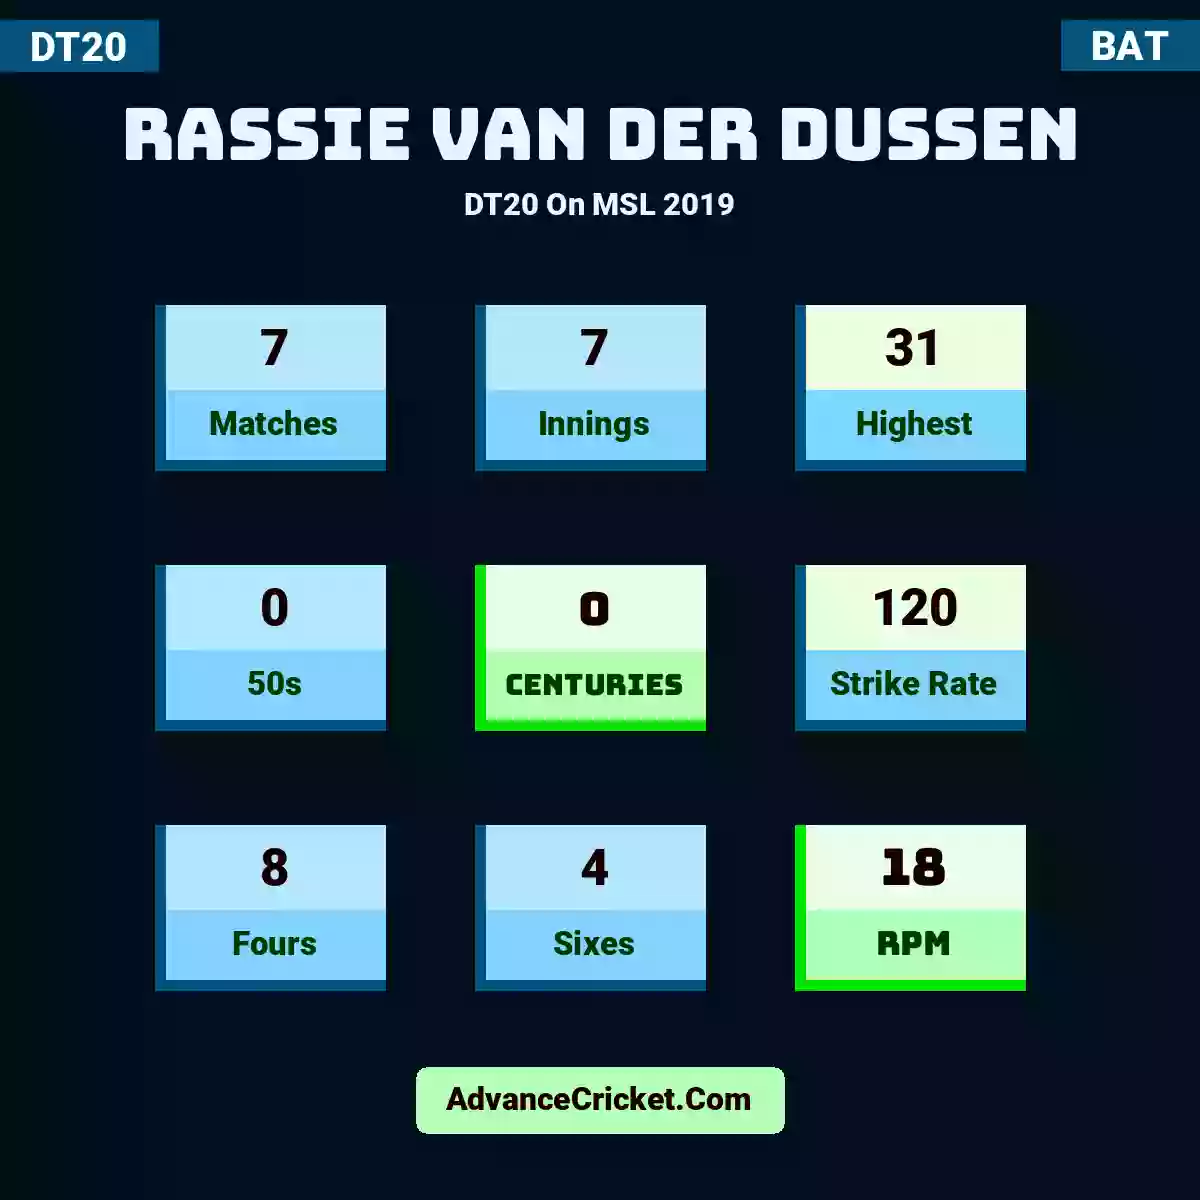 Rassie van der Dussen DT20  On MSL 2019, Rassie van der Dussen played 7 matches, scored 31 runs as highest, 0 half-centuries, and 0 centuries, with a strike rate of 120. R.Dussen hit 8 fours and 4 sixes, with an RPM of 18.